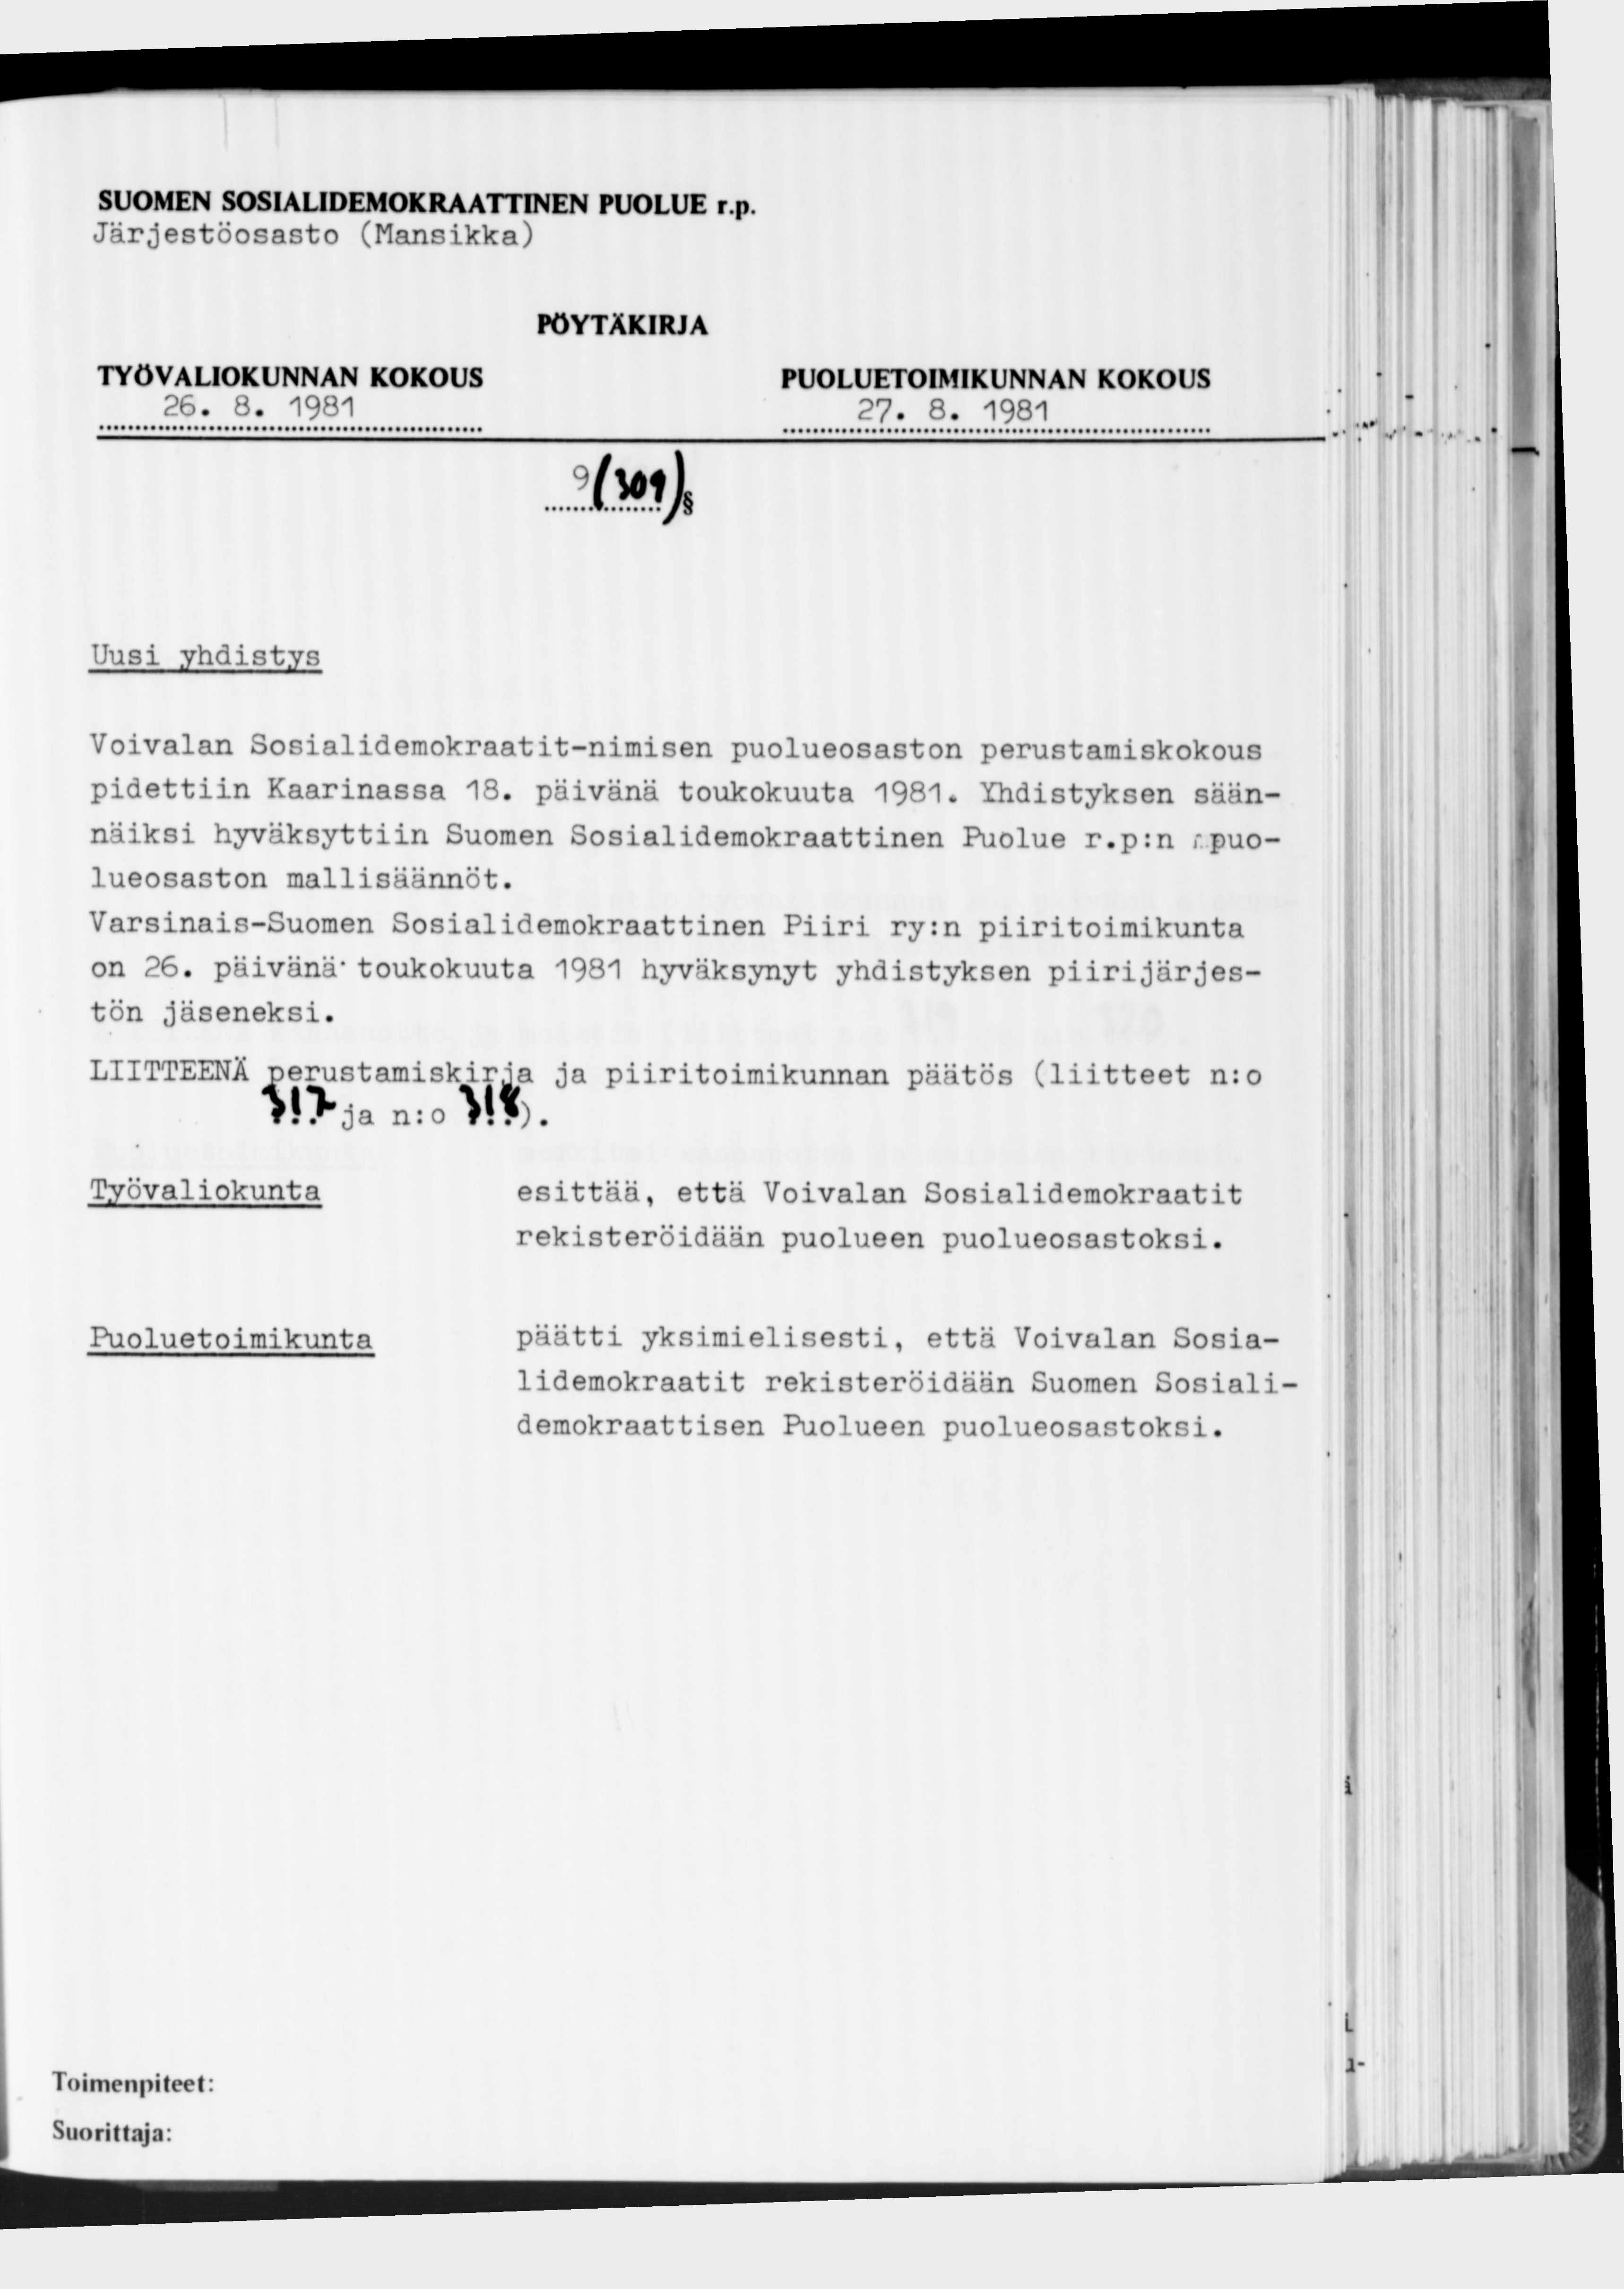 Järjestöosasto (Mansikka) 26. 8. 1981 27. 8. 1981 9 im i Uusi.yhdistys Voivalan Sosialidemokraatit-nimisen puolueosaston perustamiskokous pidettiin Kaarinassa 18. päivänä toukokuuta 1981.